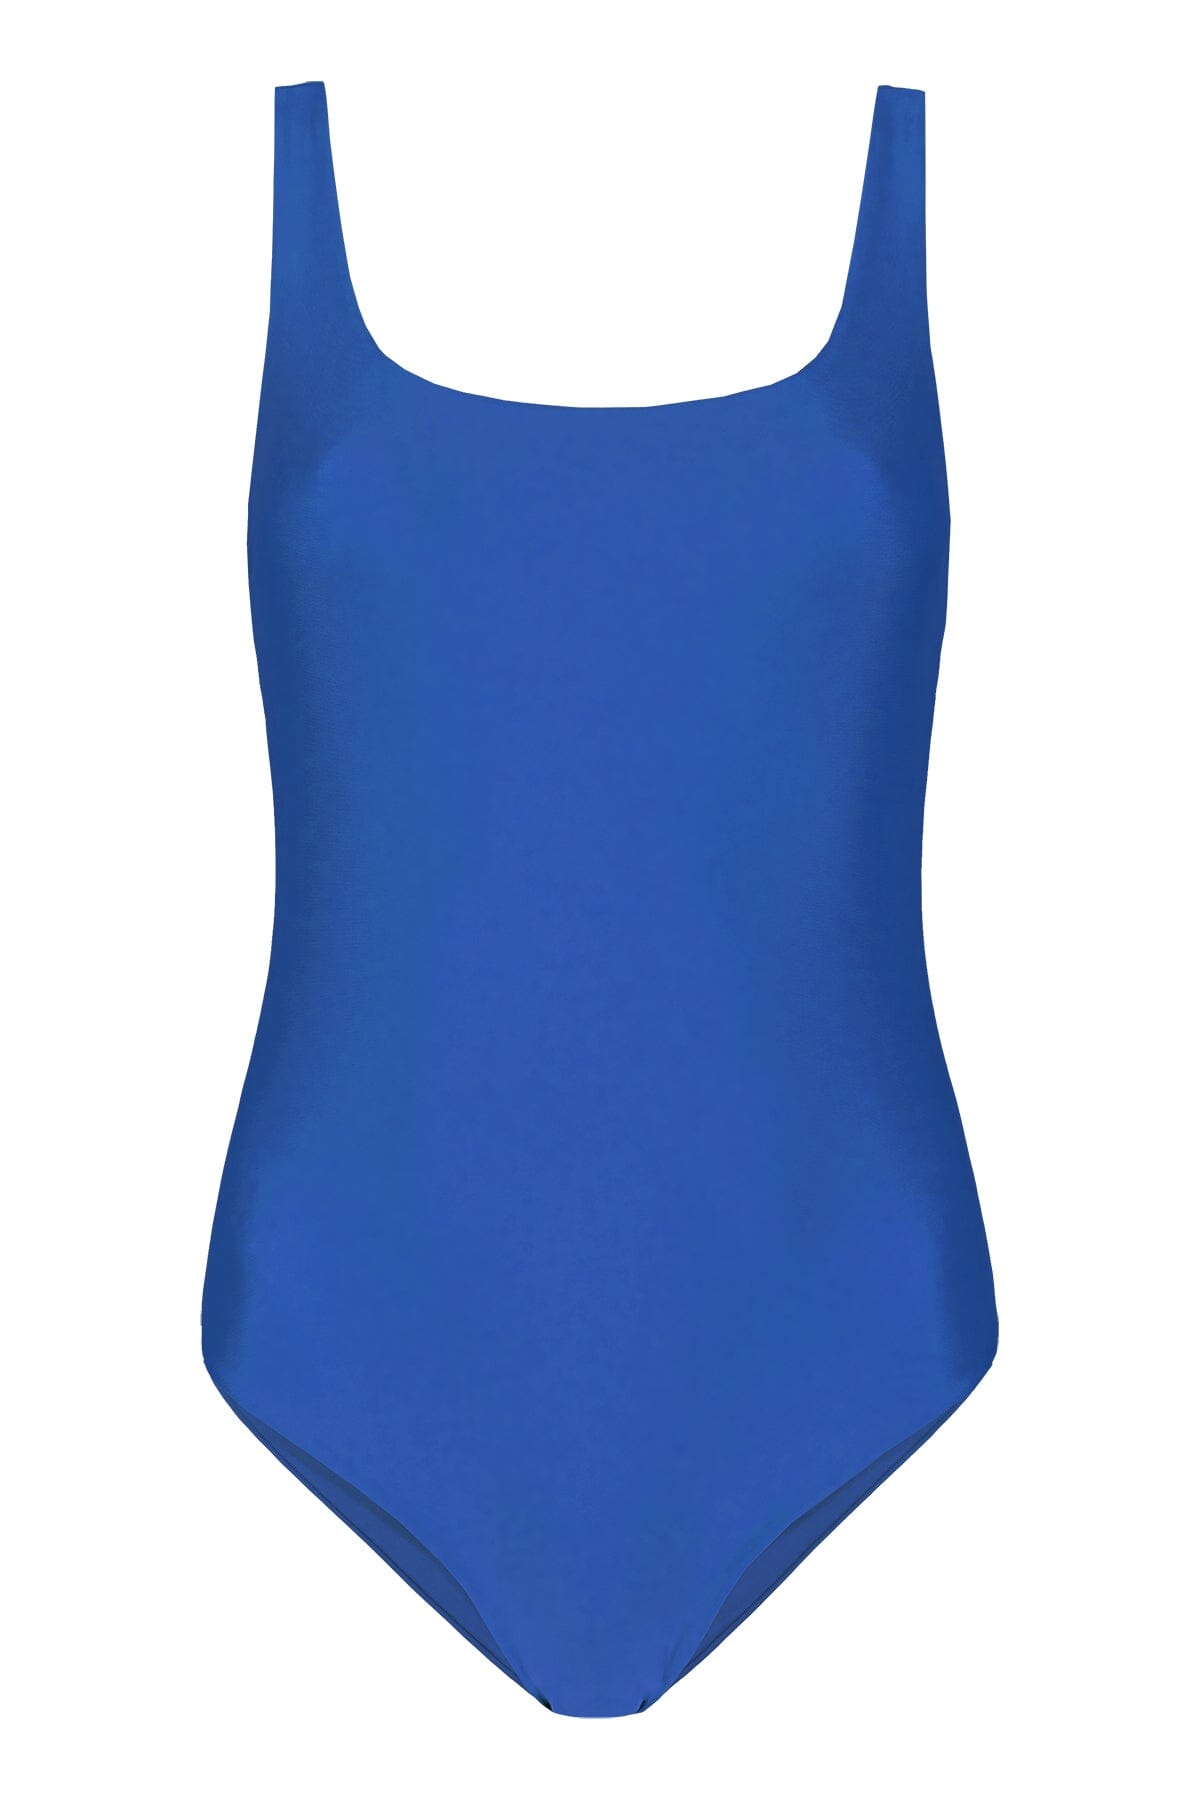 Lilja the Label Mar Onepiece - Recycled PA Mar Swimwear